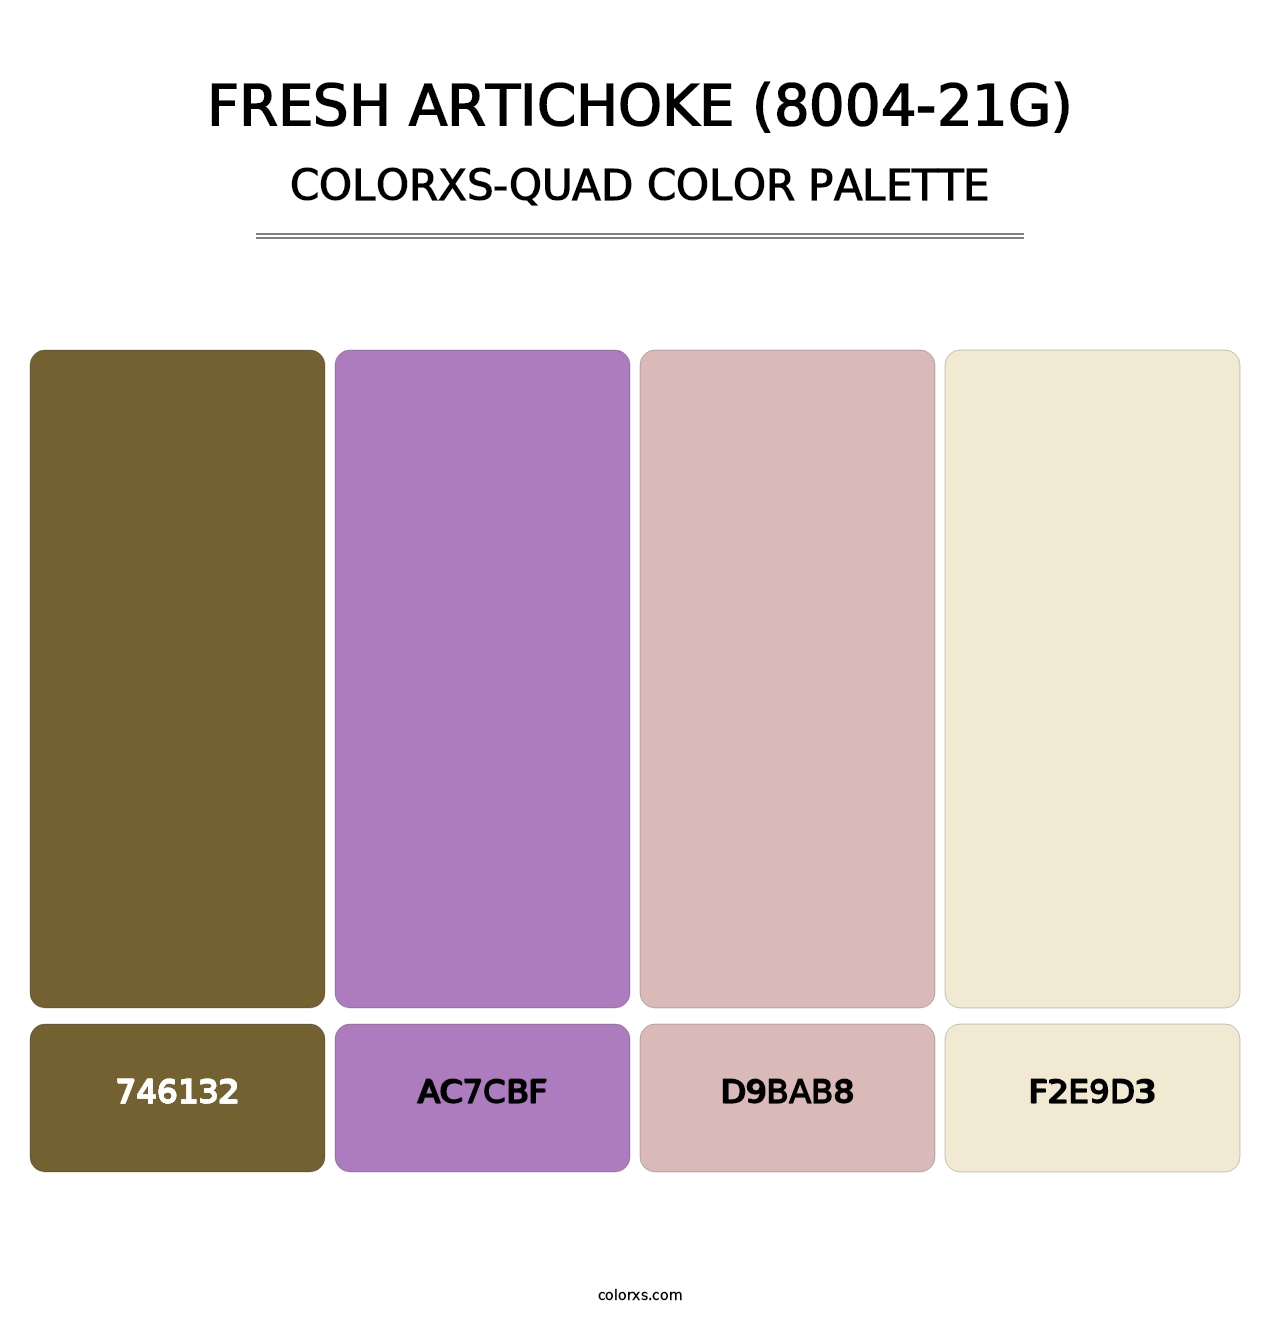 Fresh Artichoke (8004-21G) - Colorxs Quad Palette